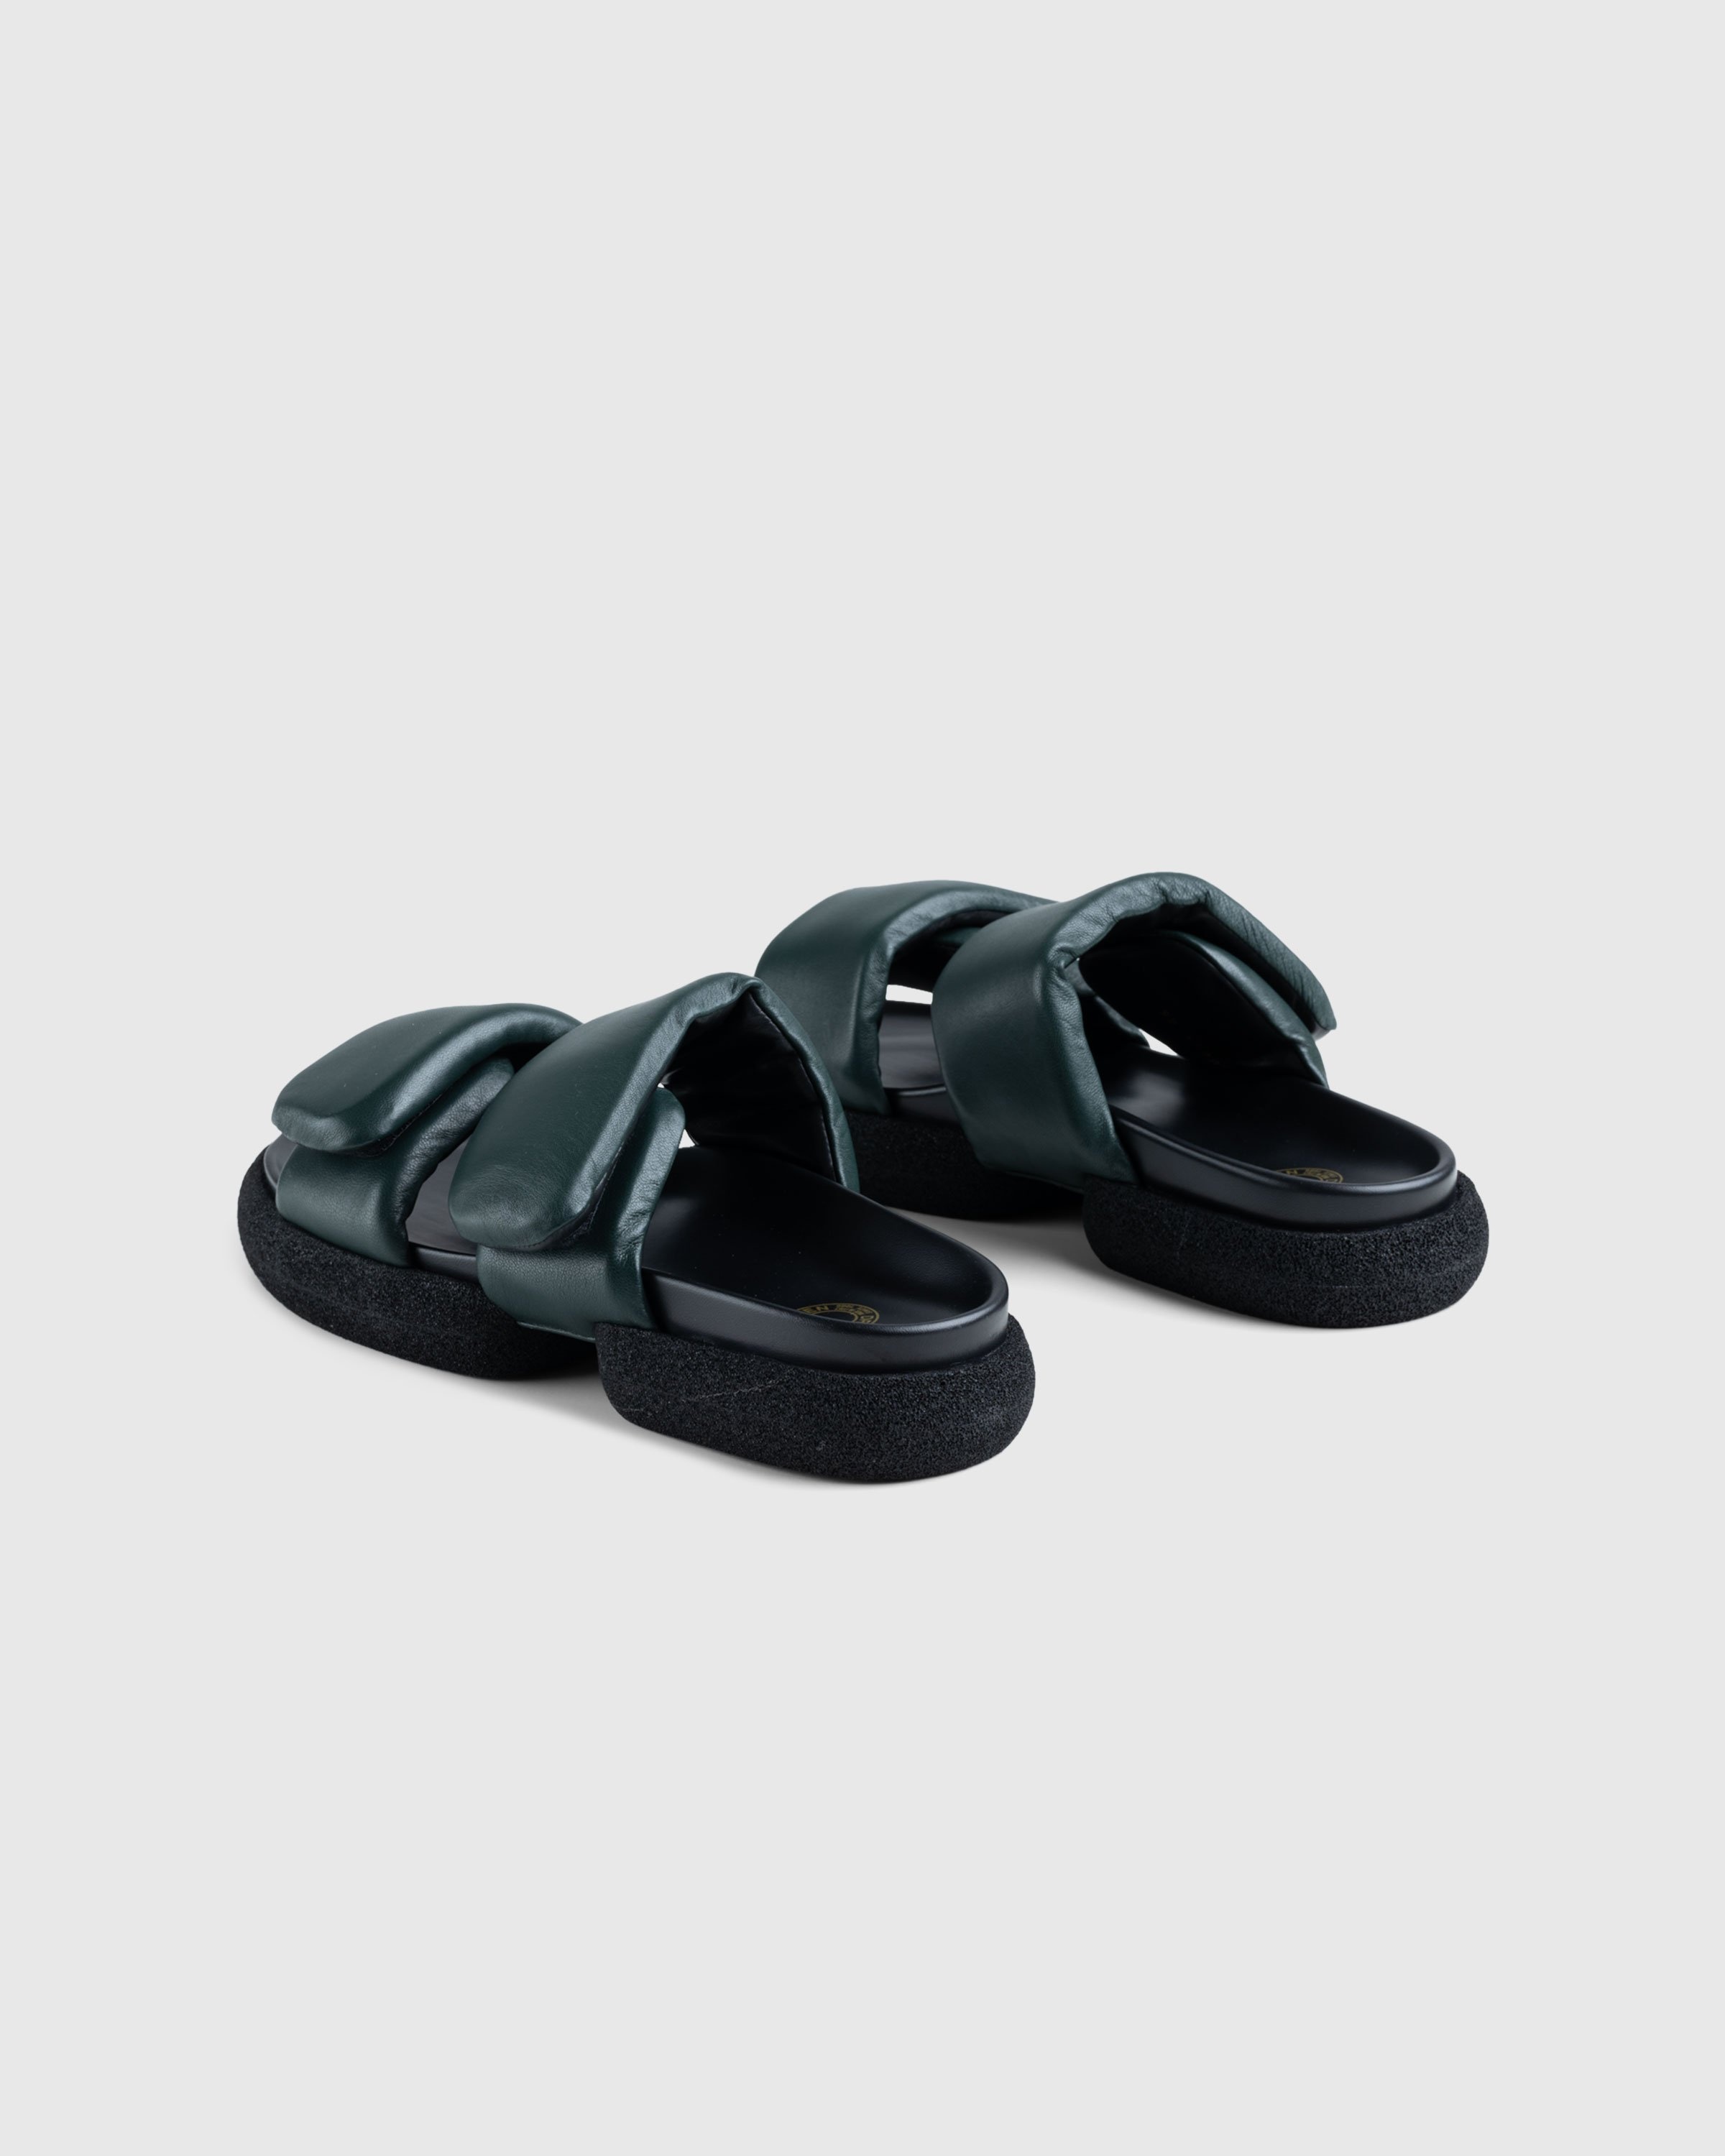 Dries van Noten – Leather Platform Sandals Green - Sandals - Green - Image 4